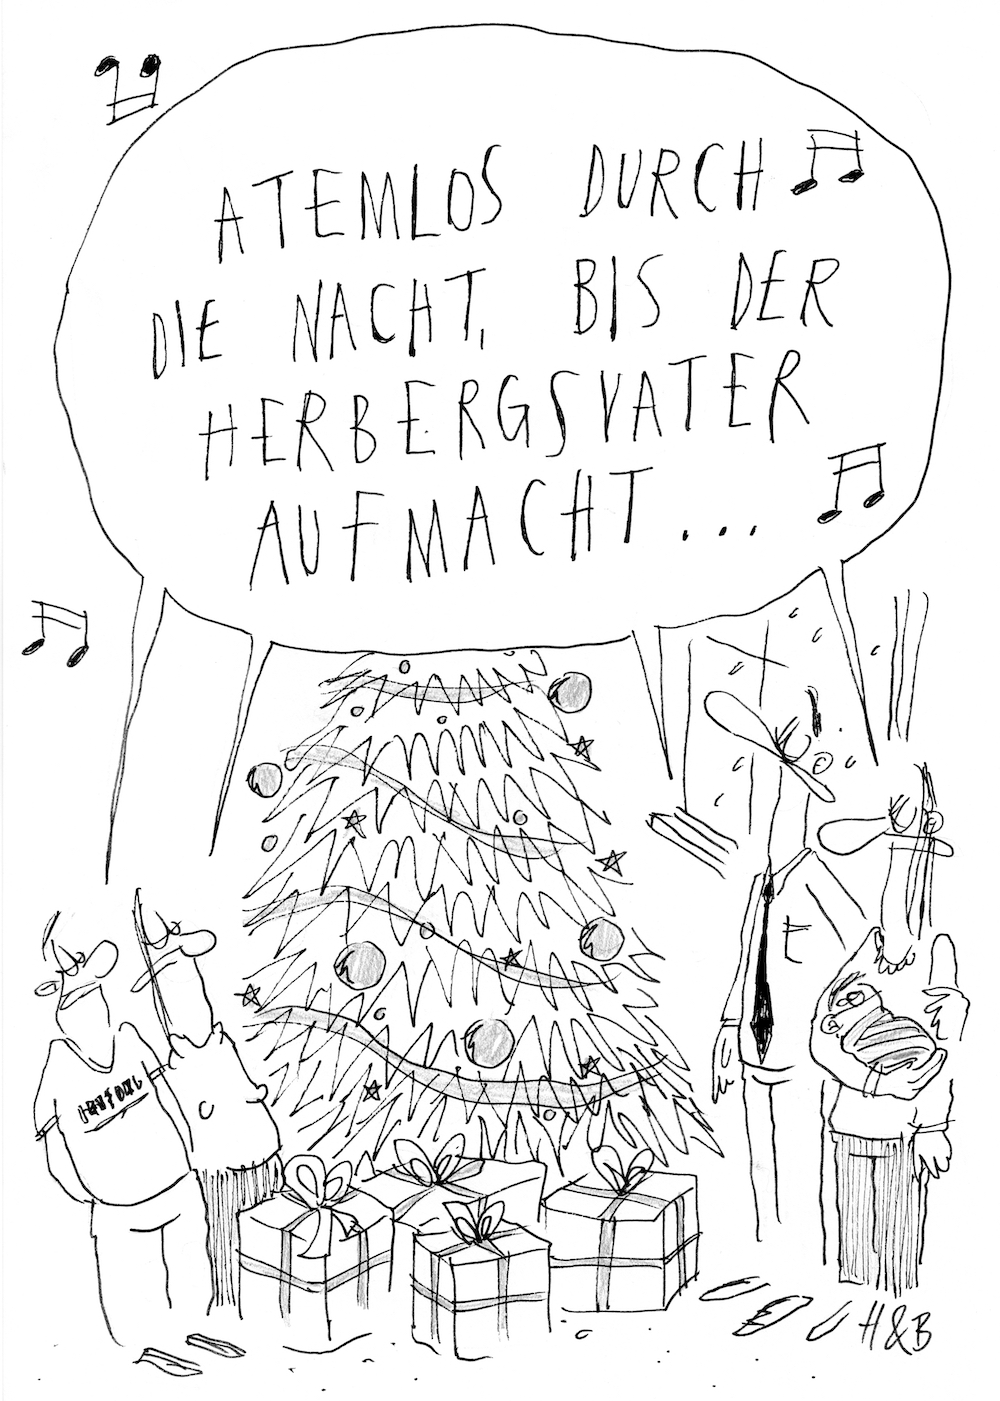 Cartoon von Hauck & Bauer. Eine Familie steht vorm Weihnachtsbaum, singt: "Atemlos durch die Nacht, bis der Herbergsvater aufmacht ..."